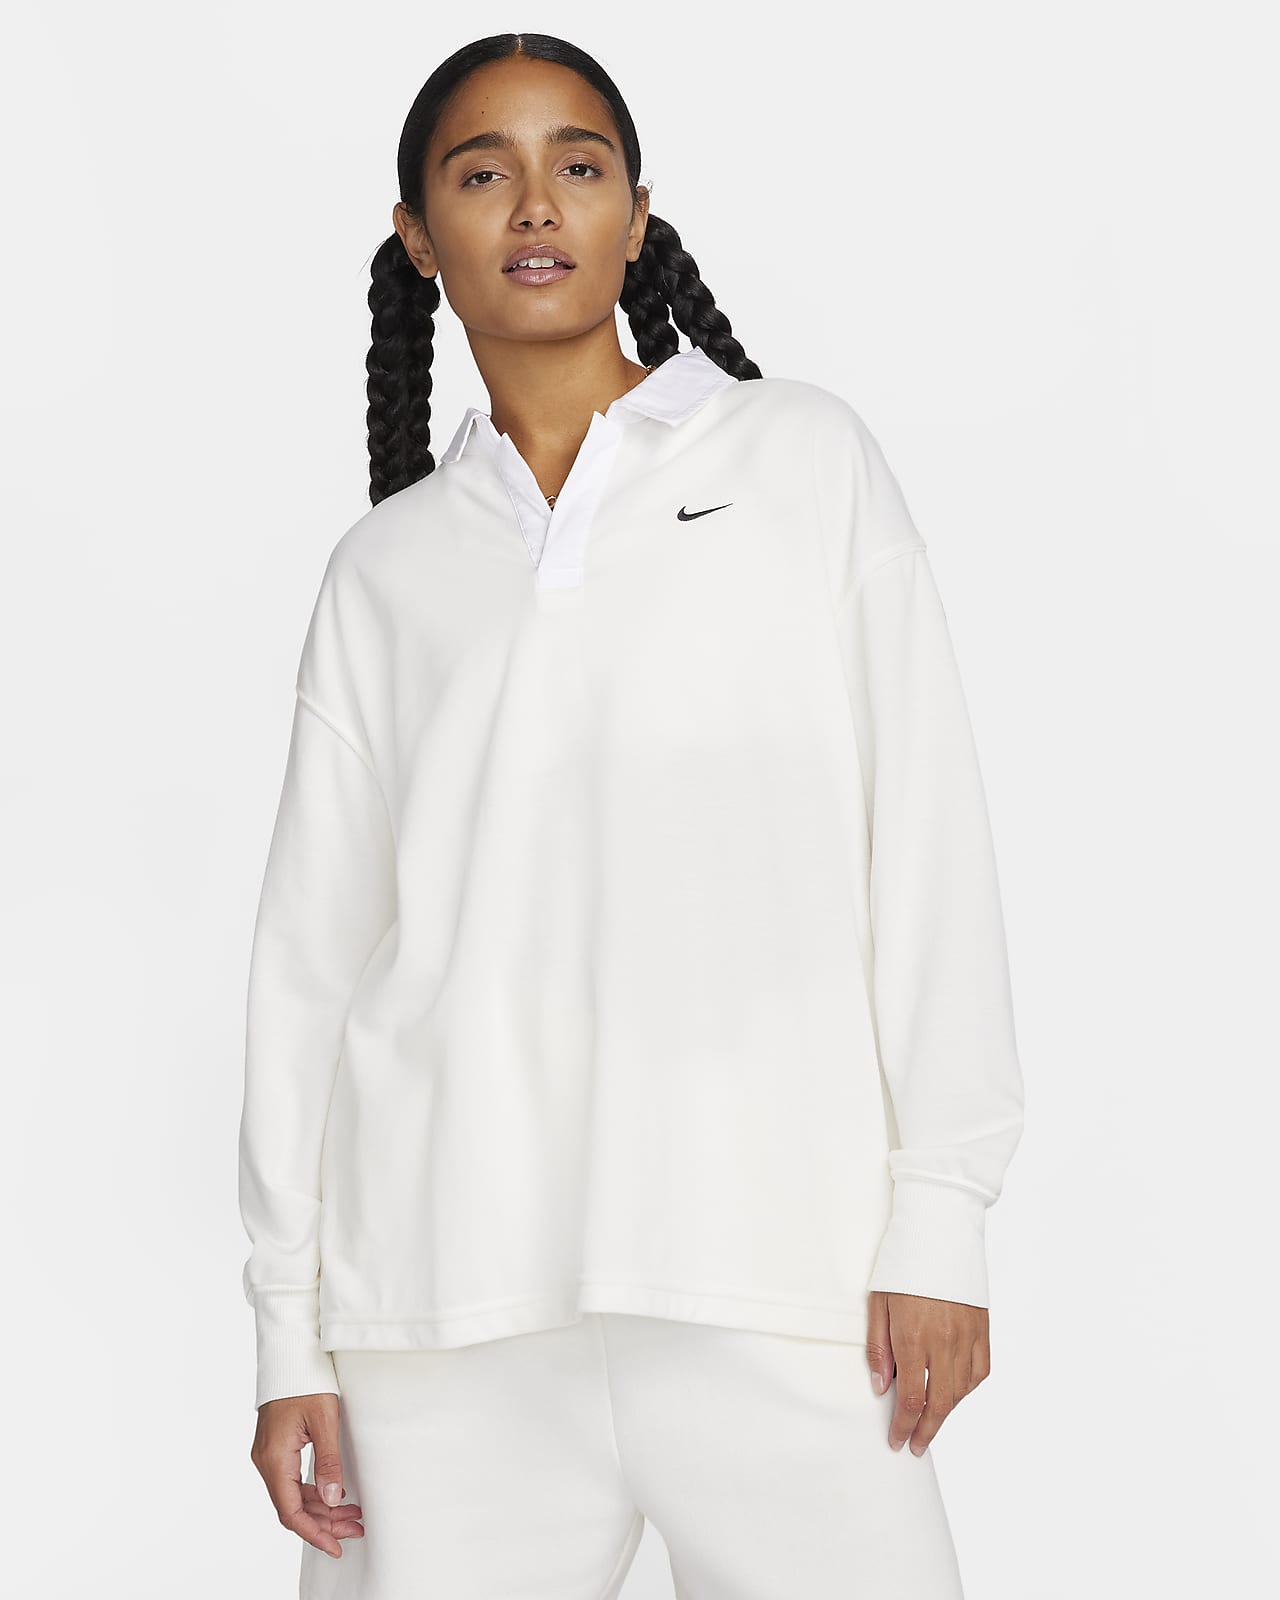 Nike Sportswear Essential Women's Oversized Long-Sleeve Polo.